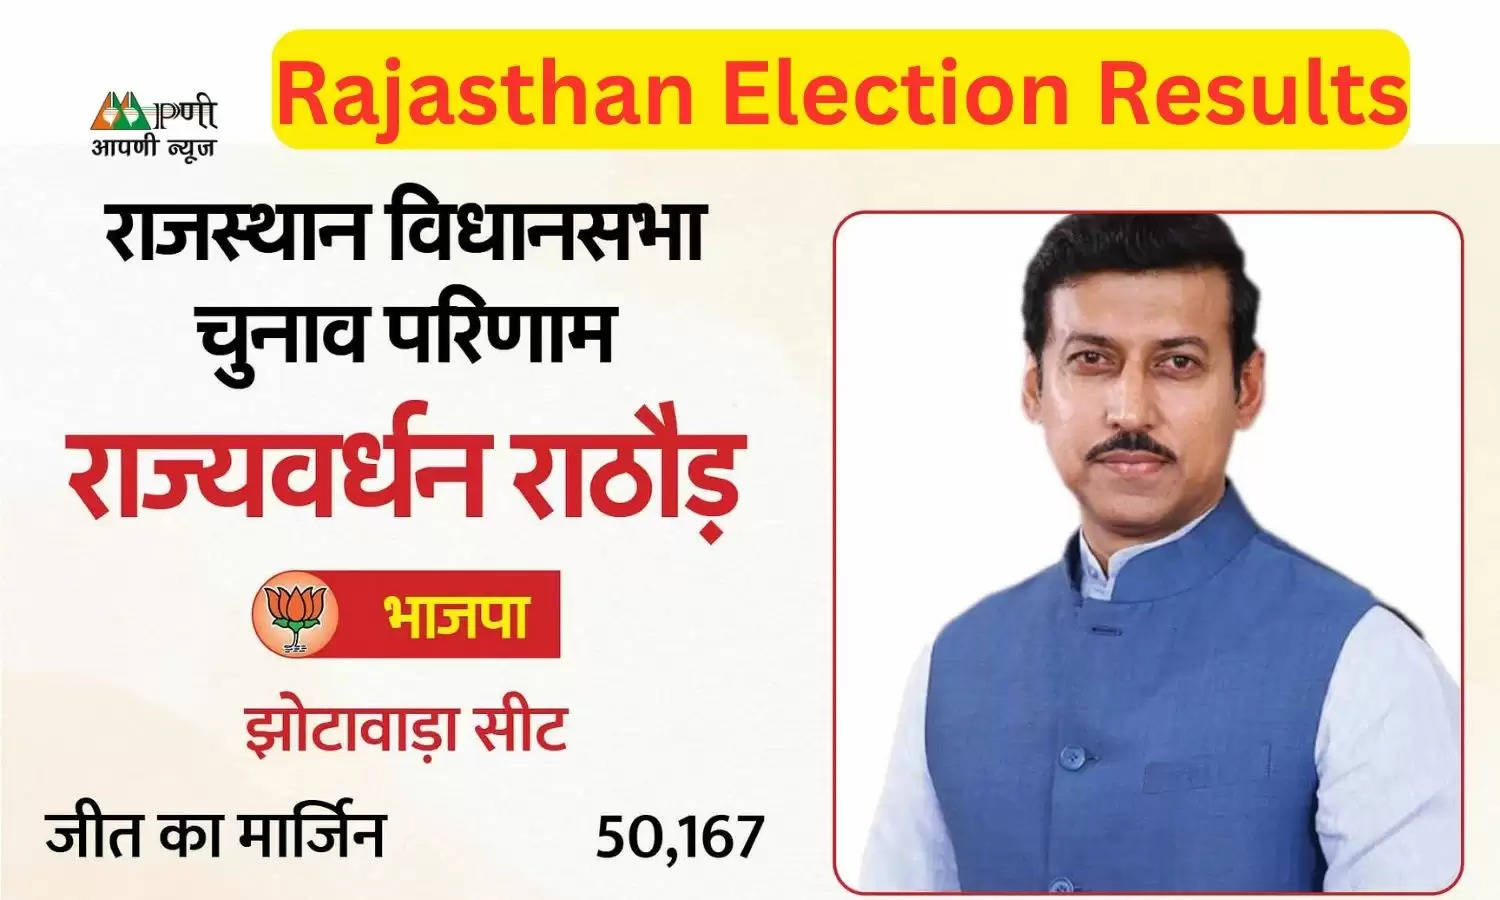 Rajasthan Election Results: भाजपा के 7 में से 3 सांसद नहीं खिला पाये कमल, इस महिला सांसद ने दर्ज की बड़ी जीत